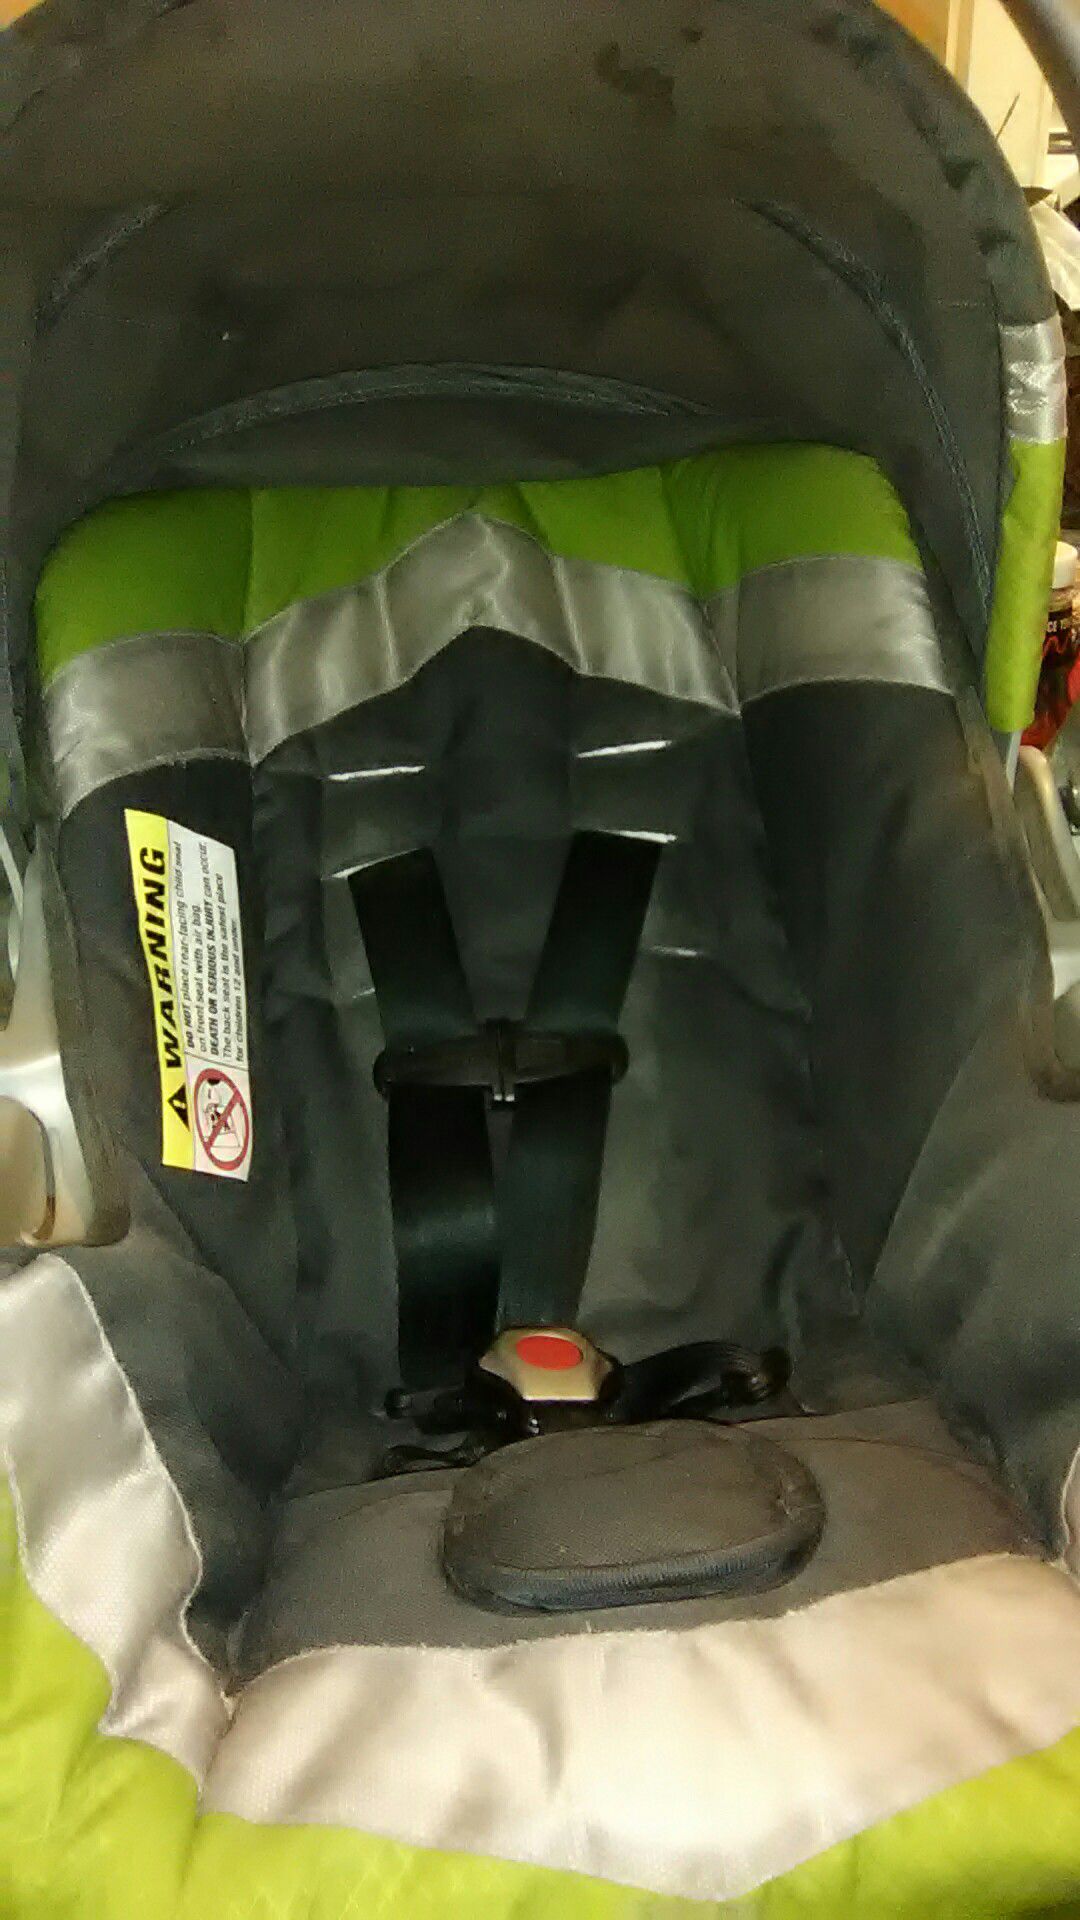 Baby car seat 13$